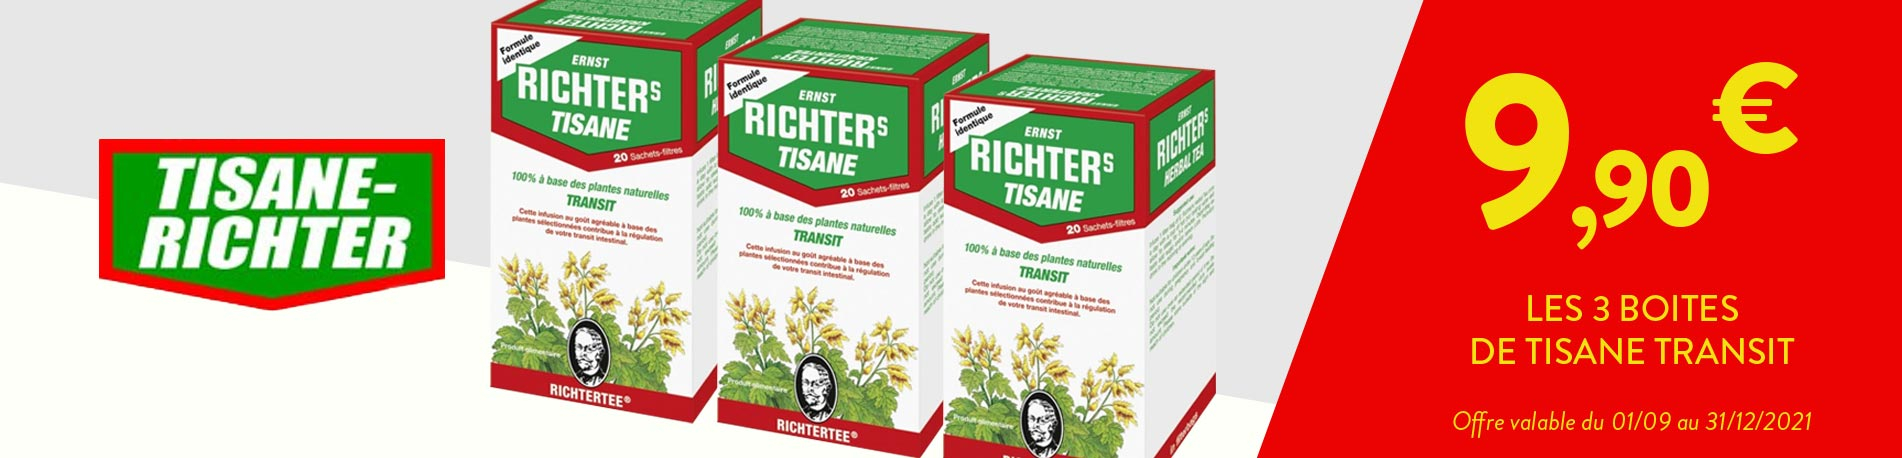 Tisane richter en pharmacie - Achat en ligne pharmacie homéopathique